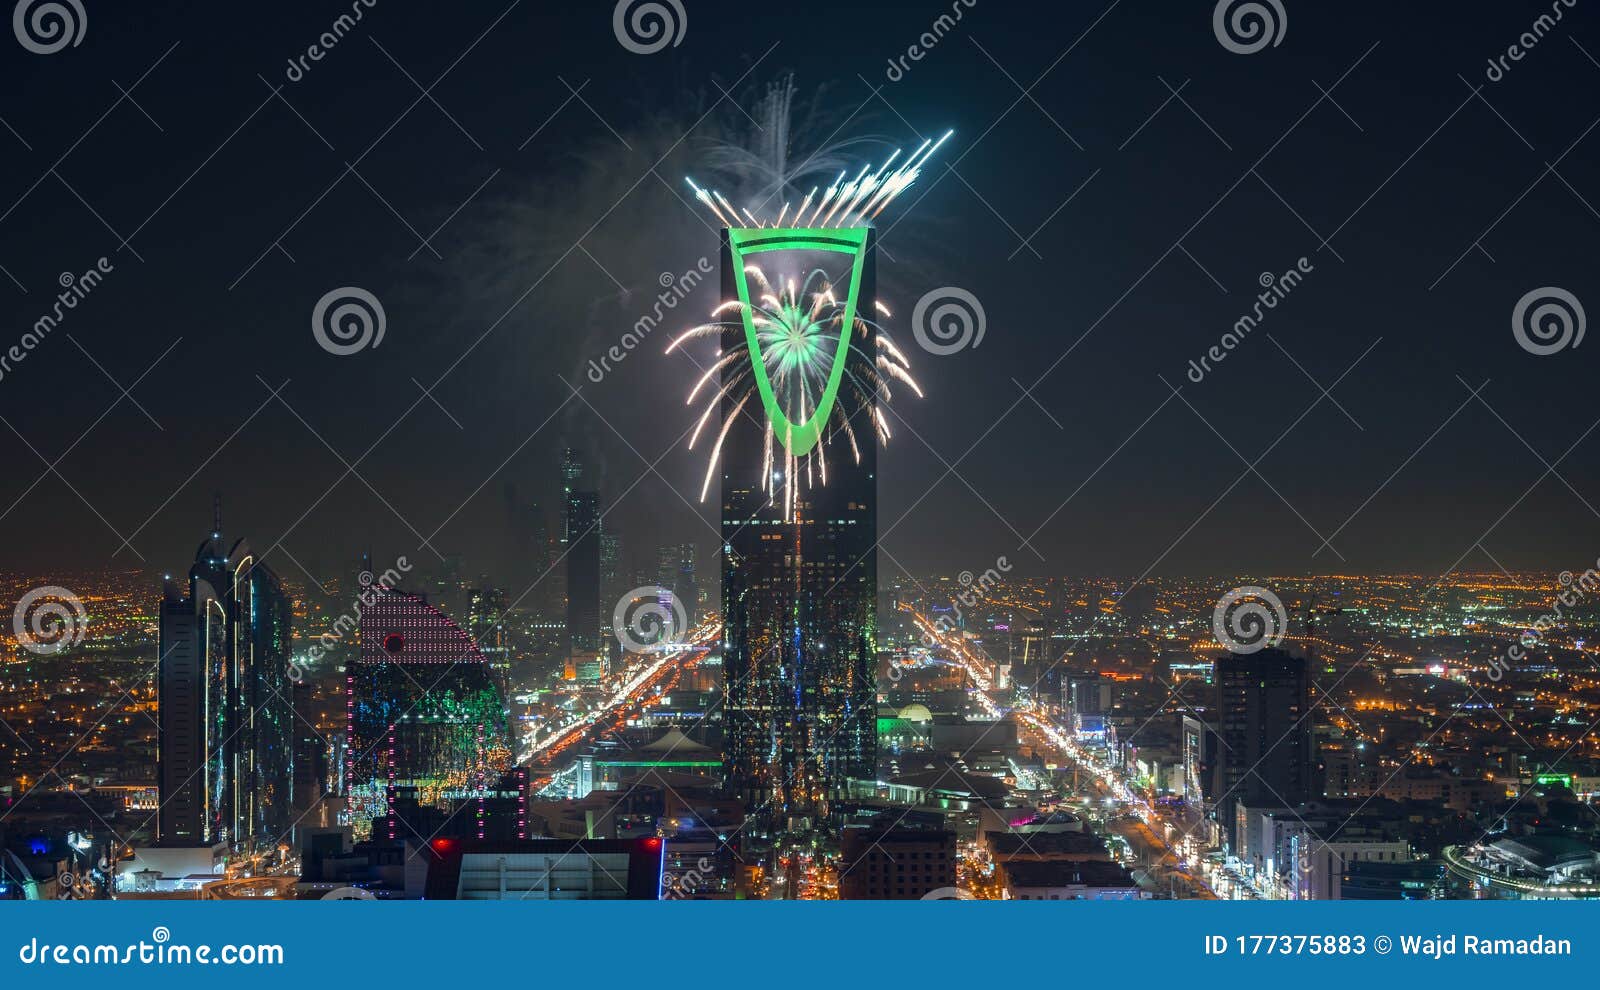 riyadh celebration fireworks - saudi arabia riyadh landscape at night - kingdom tower Ã¢â¬â riyadh skyline - burj al-mamlaka Ã¢â¬â